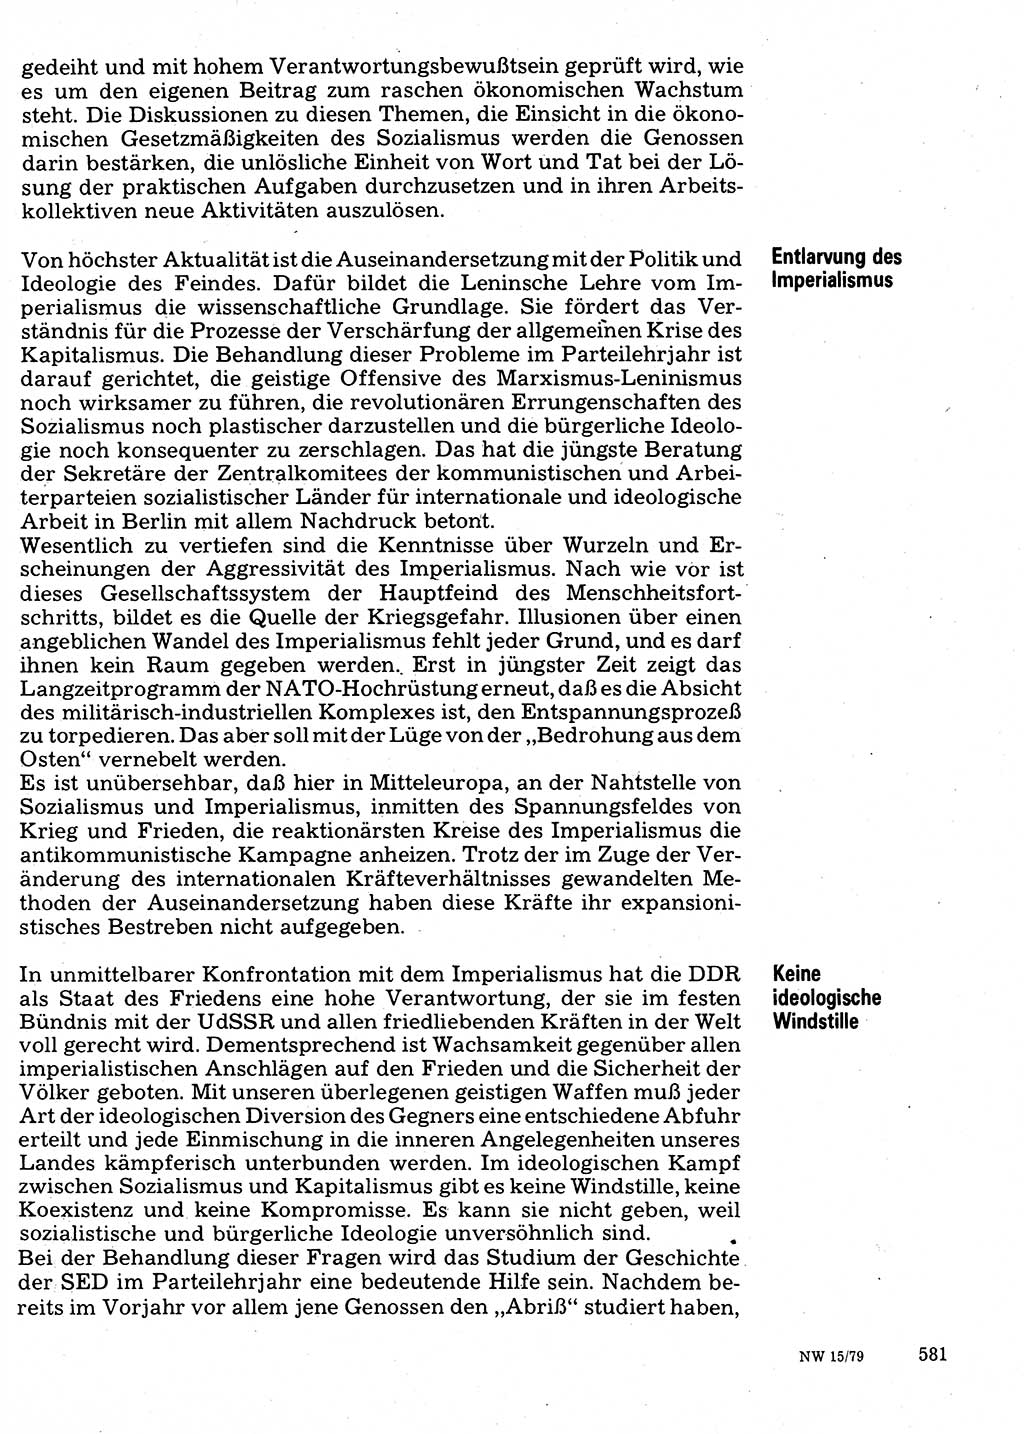 Neuer Weg (NW), Organ des Zentralkomitees (ZK) der SED (Sozialistische Einheitspartei Deutschlands) für Fragen des Parteilebens, 34. Jahrgang [Deutsche Demokratische Republik (DDR)] 1979, Seite 581 (NW ZK SED DDR 1979, S. 581)